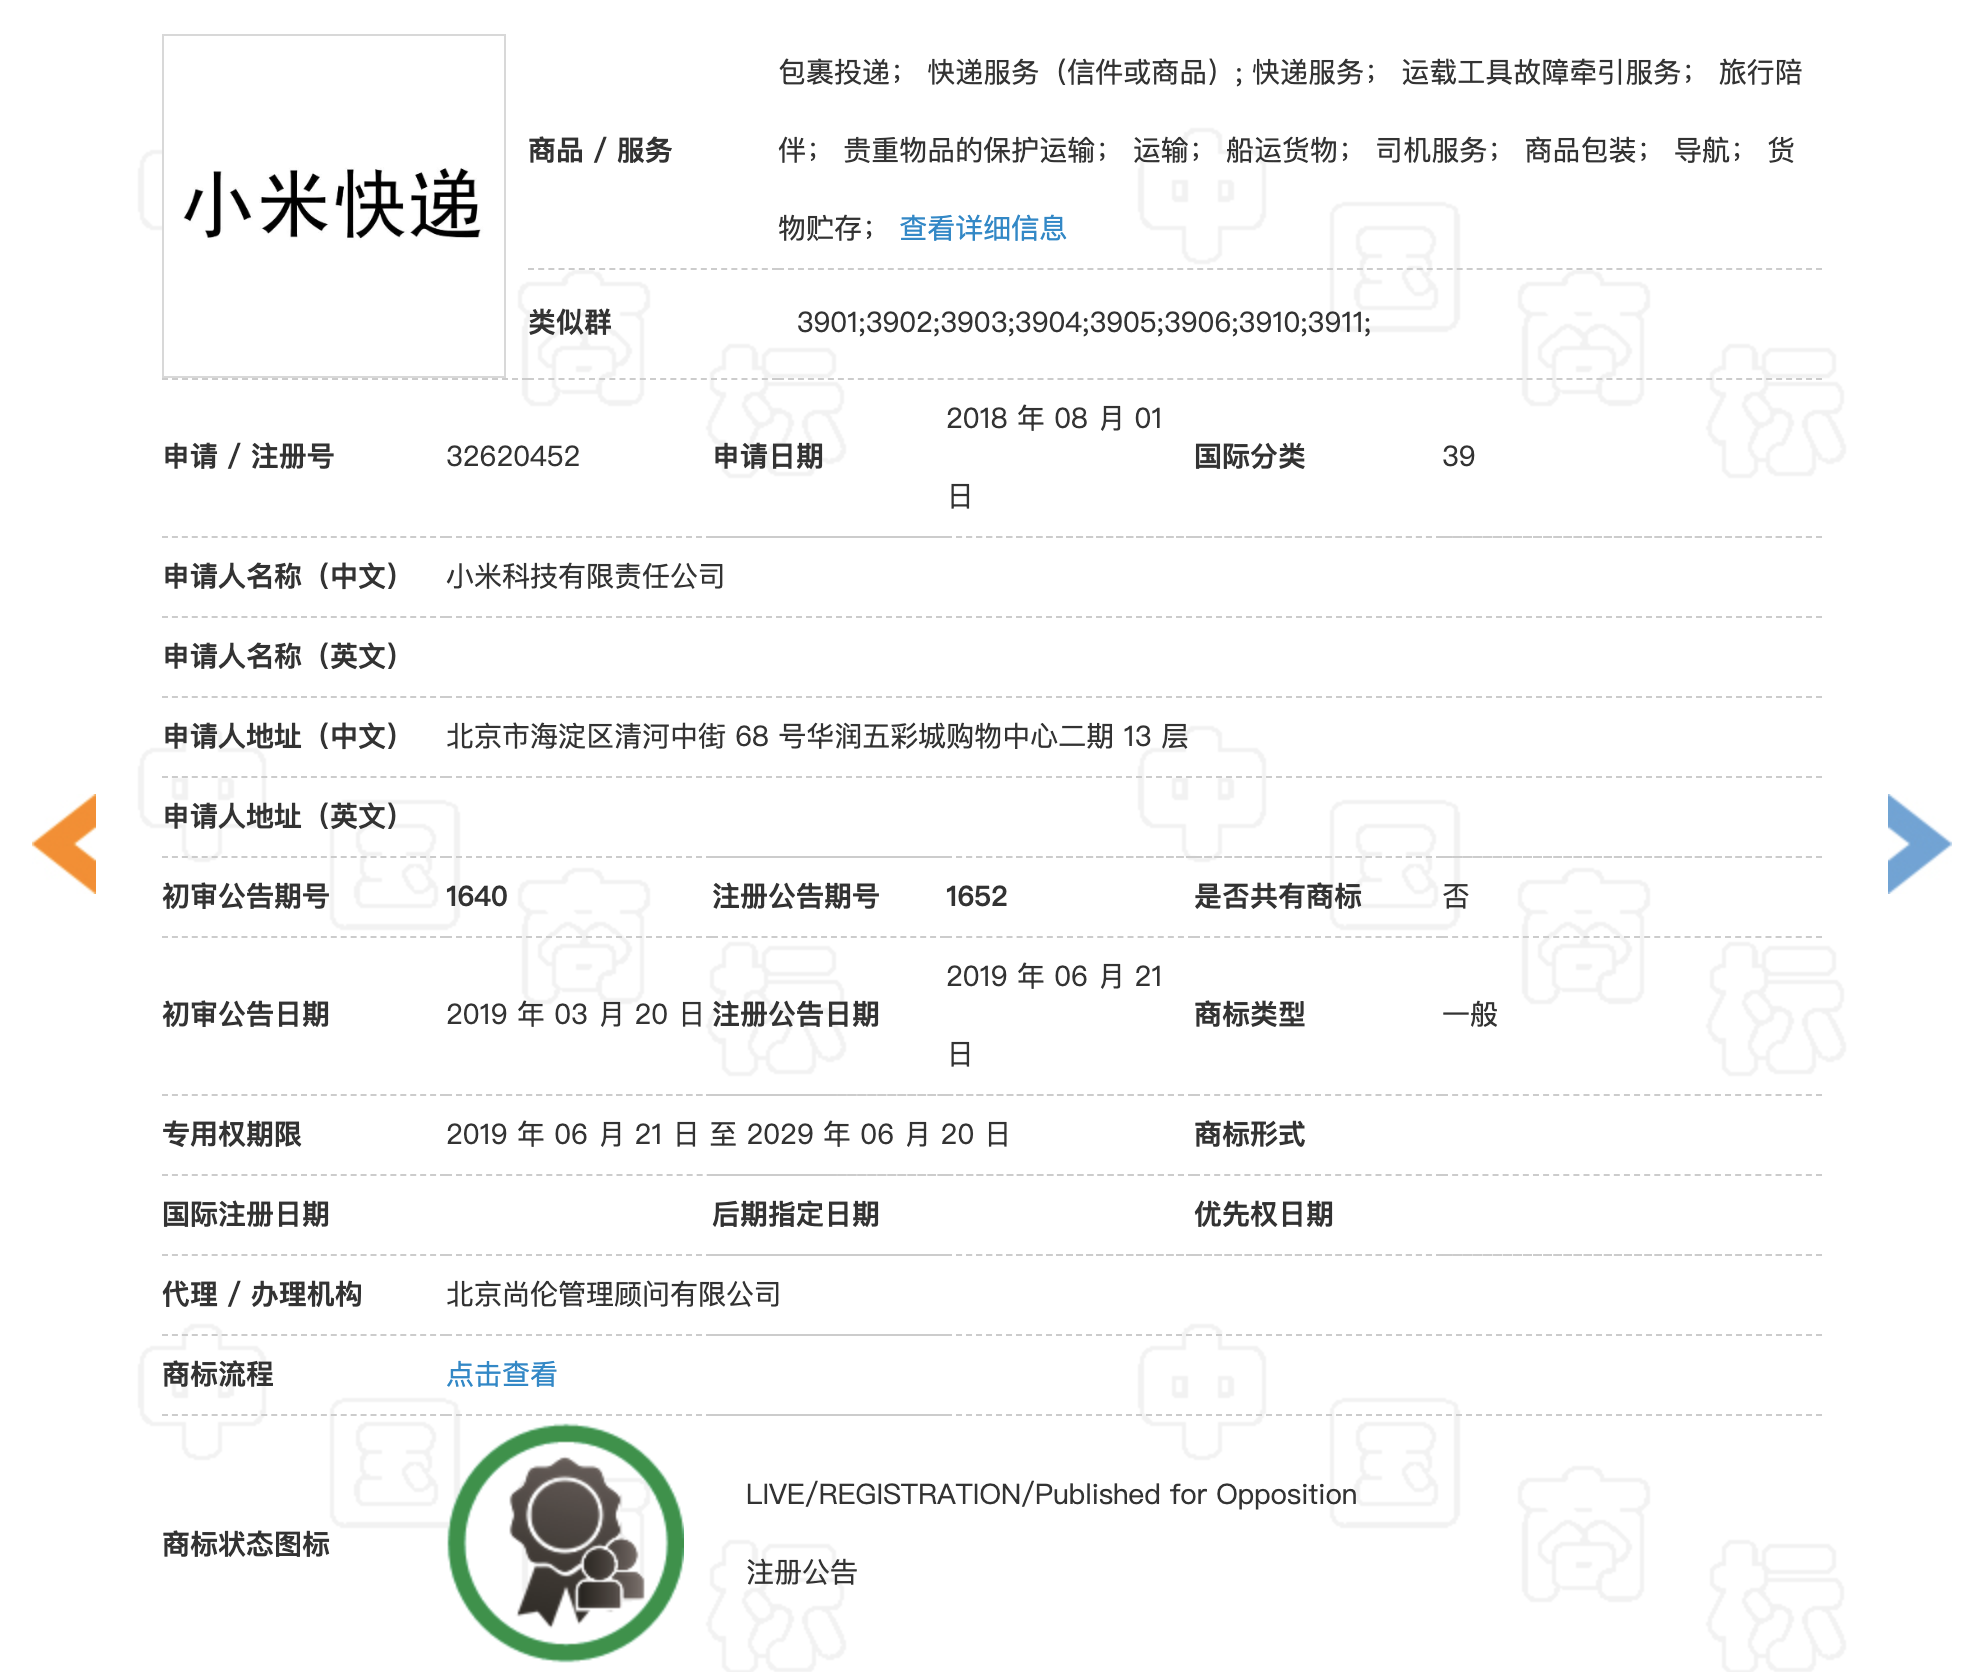 经过简单的检索,在中国商标网上查询到了小米注册的小米快递商标,且不